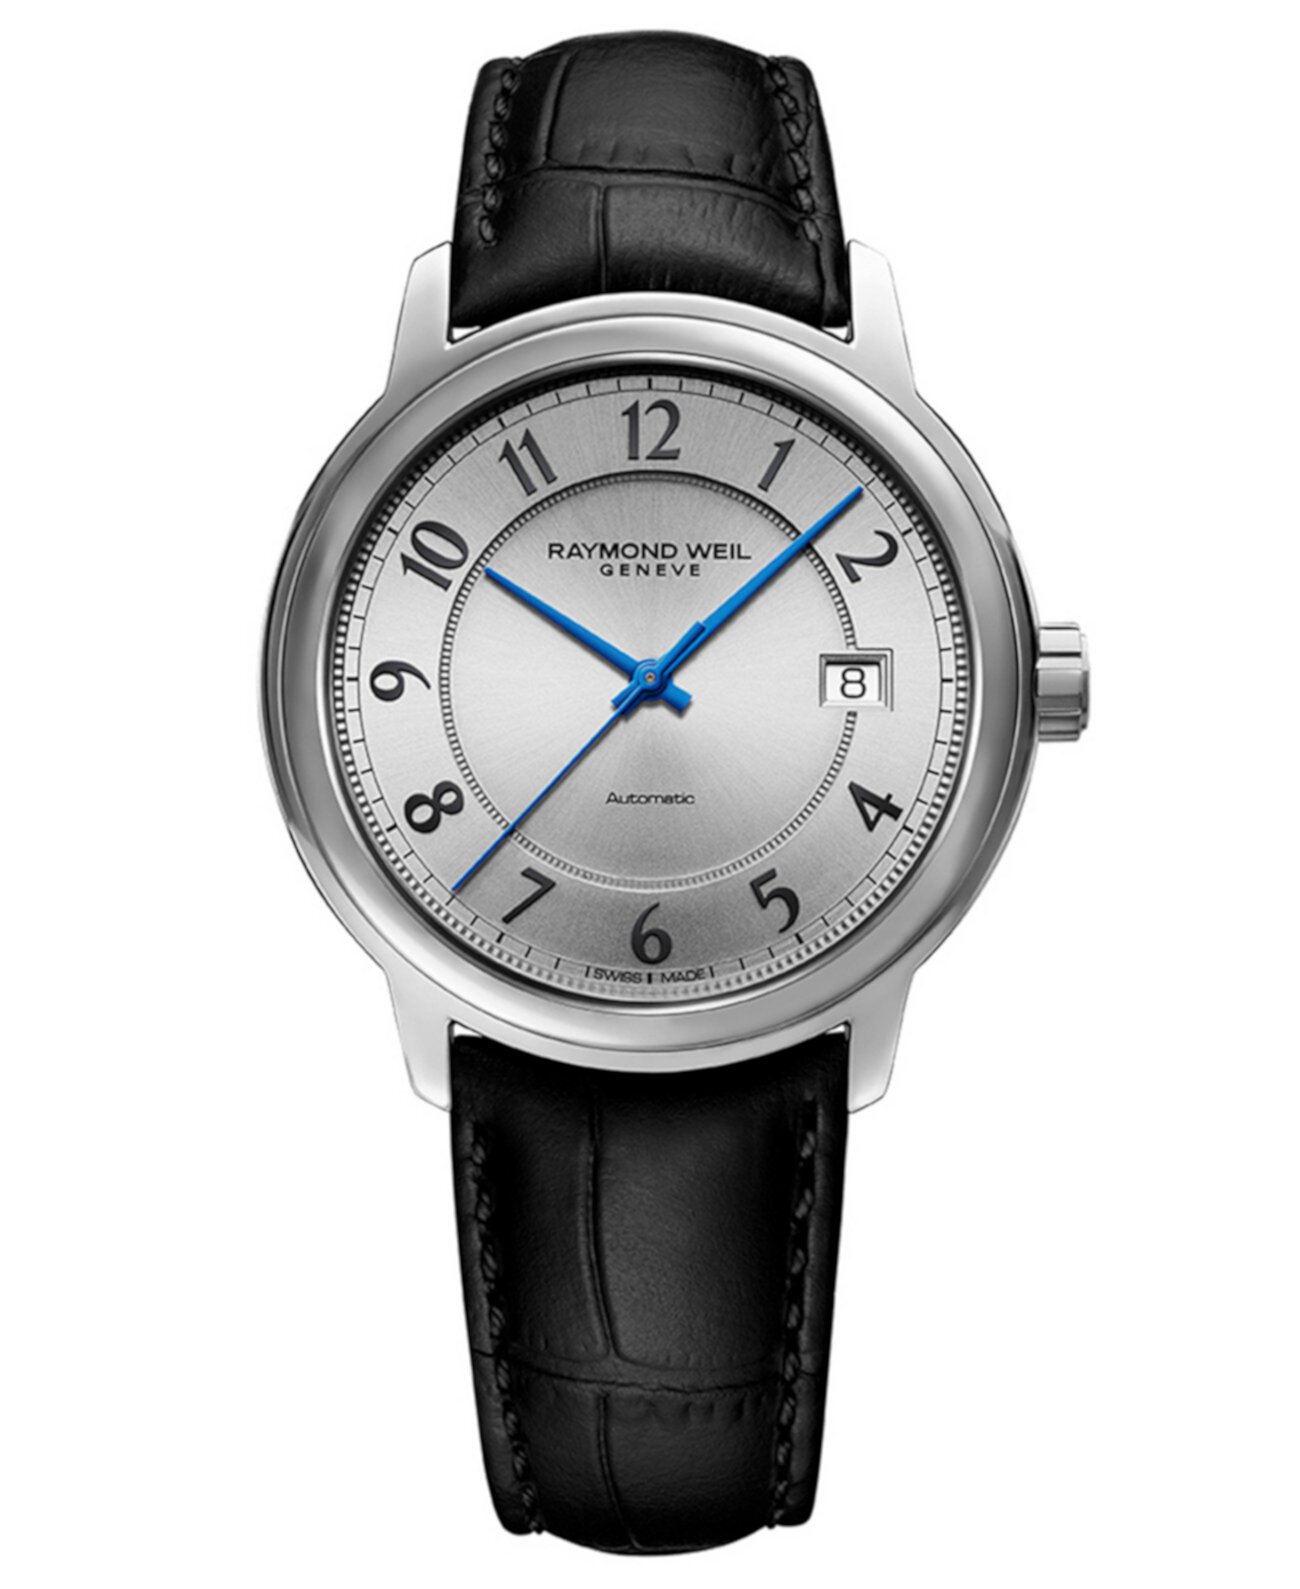 Мужские швейцарские автоматические часы Maestro с черным кожаным ремешком, 39 мм Raymond Weil